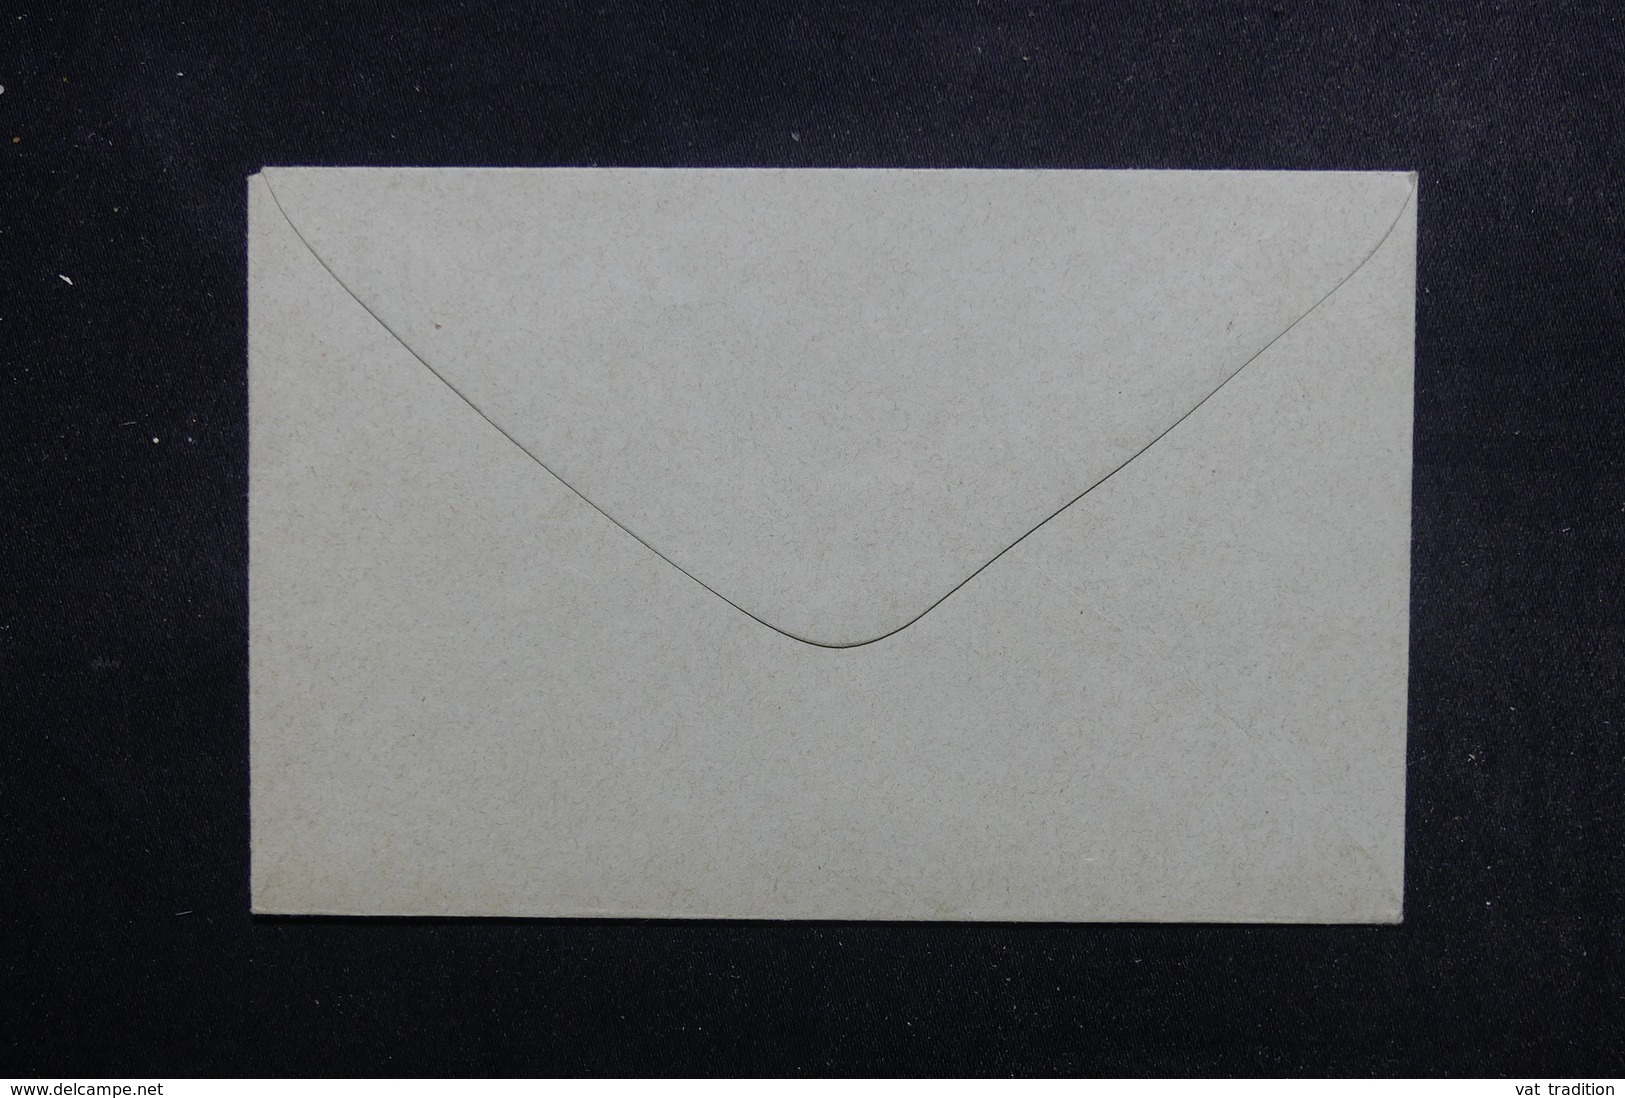 GUYANE - Entier Postal Type Groupe, Non Circulé - L 49456 - Storia Postale